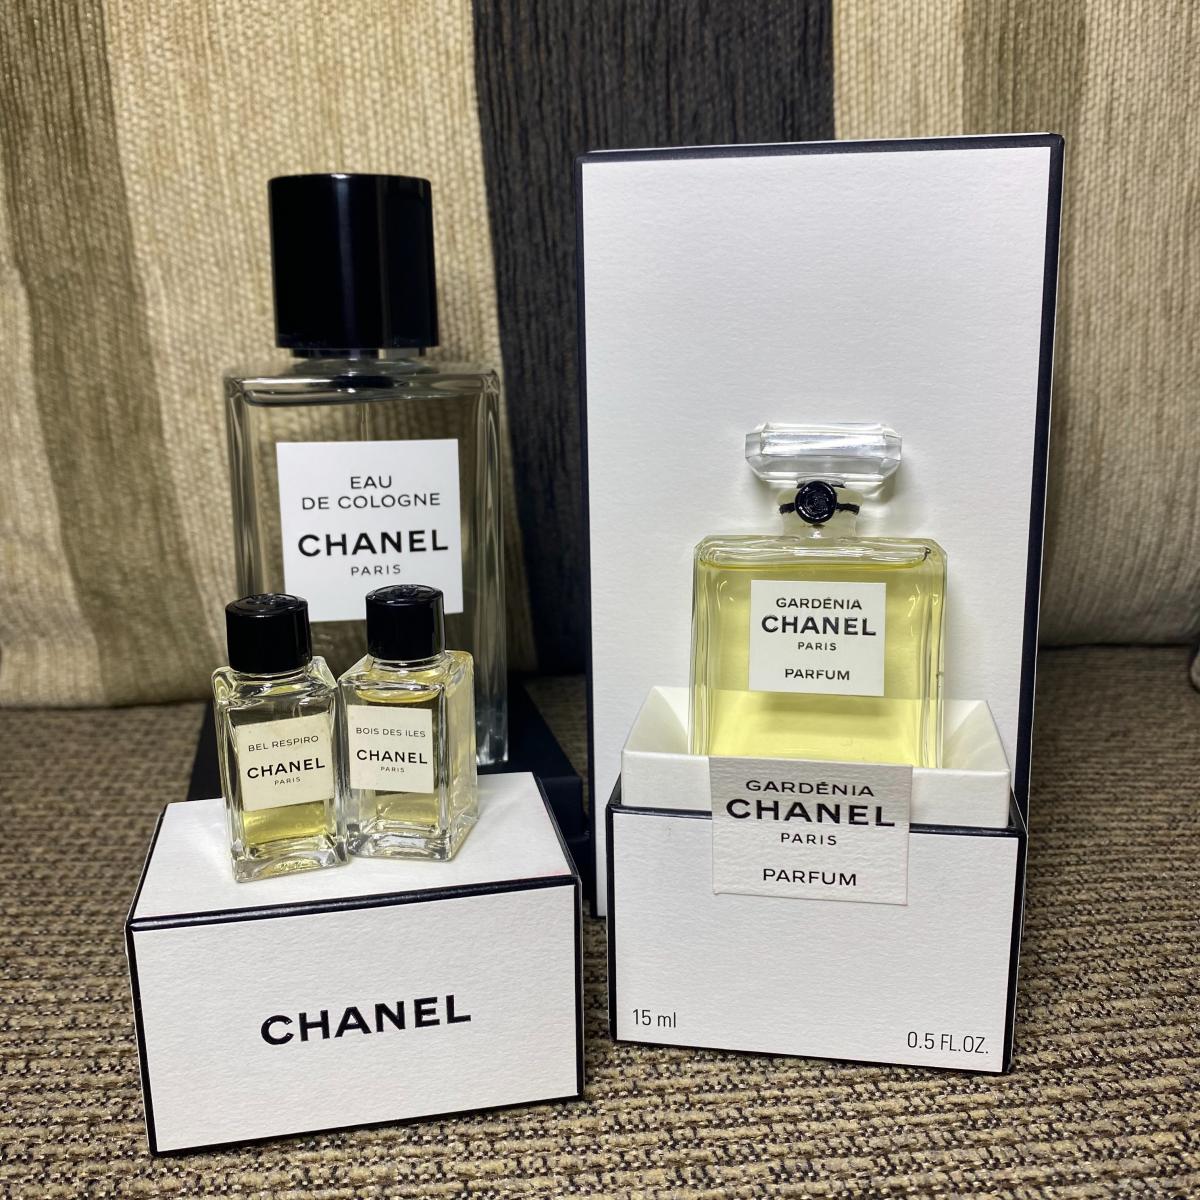 Les Exclusifs de Chanel Eau de Cologne Chanel perfume - a fragrance for ...